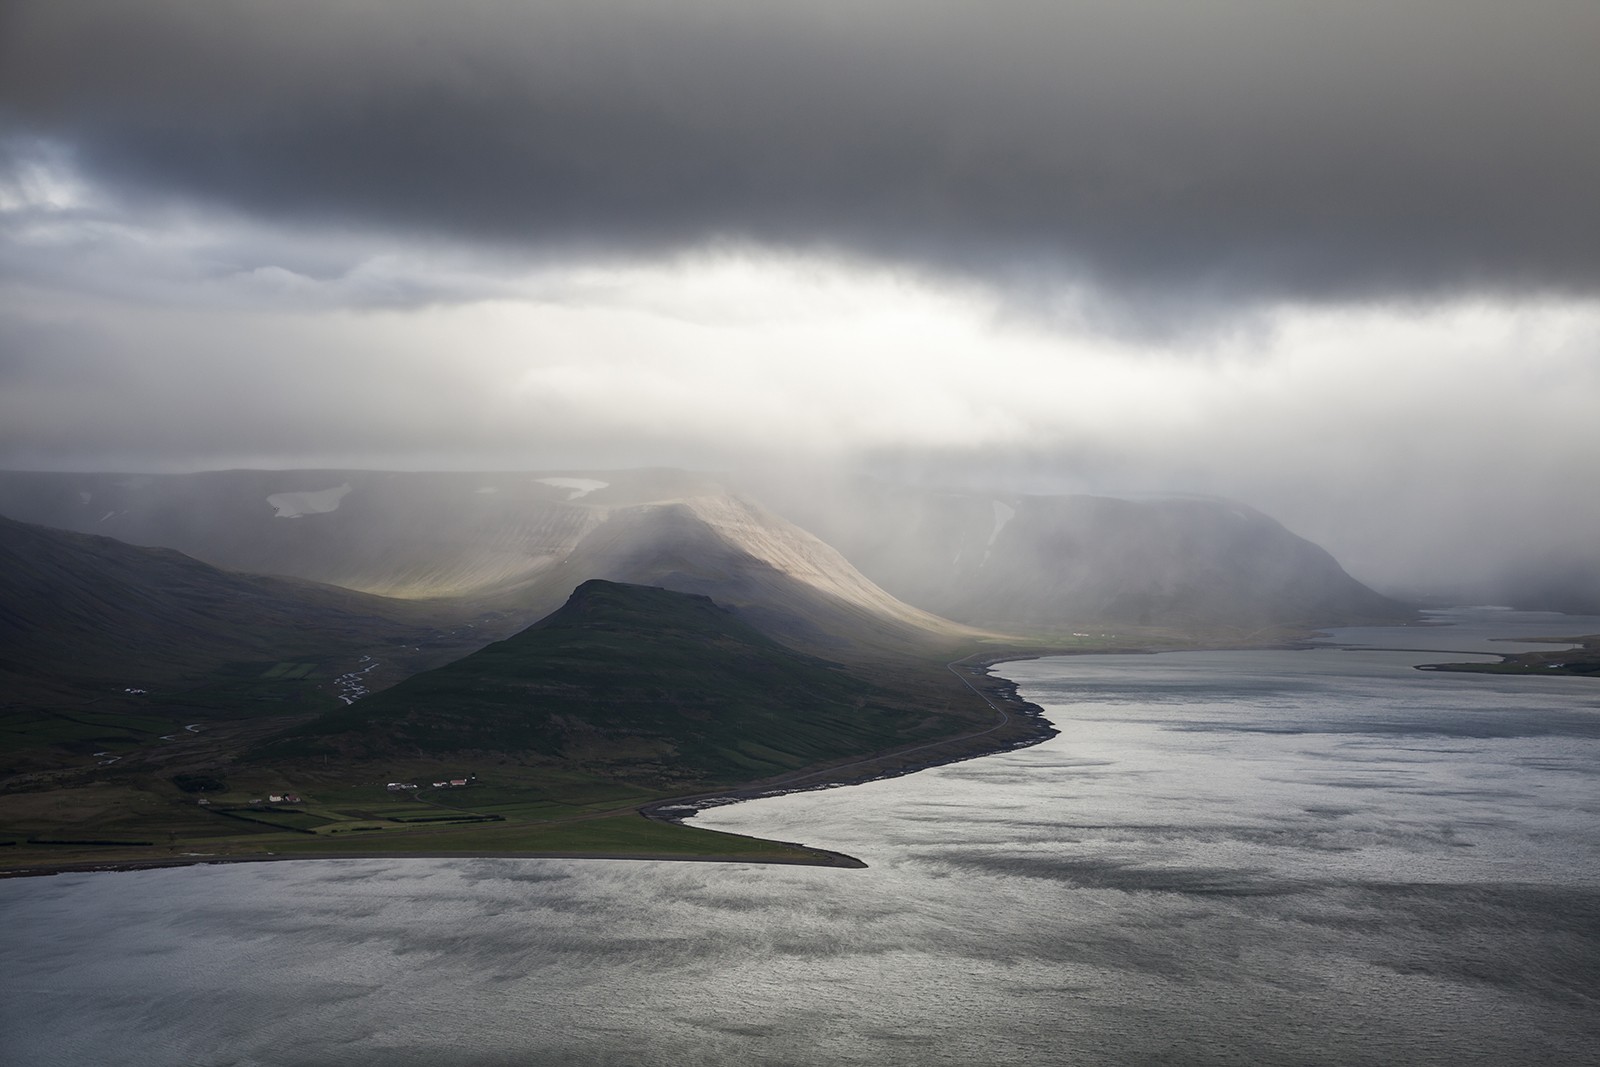 General 1600x1067 landscape nature coast Iceland fjord overcast hills nordic landscapes